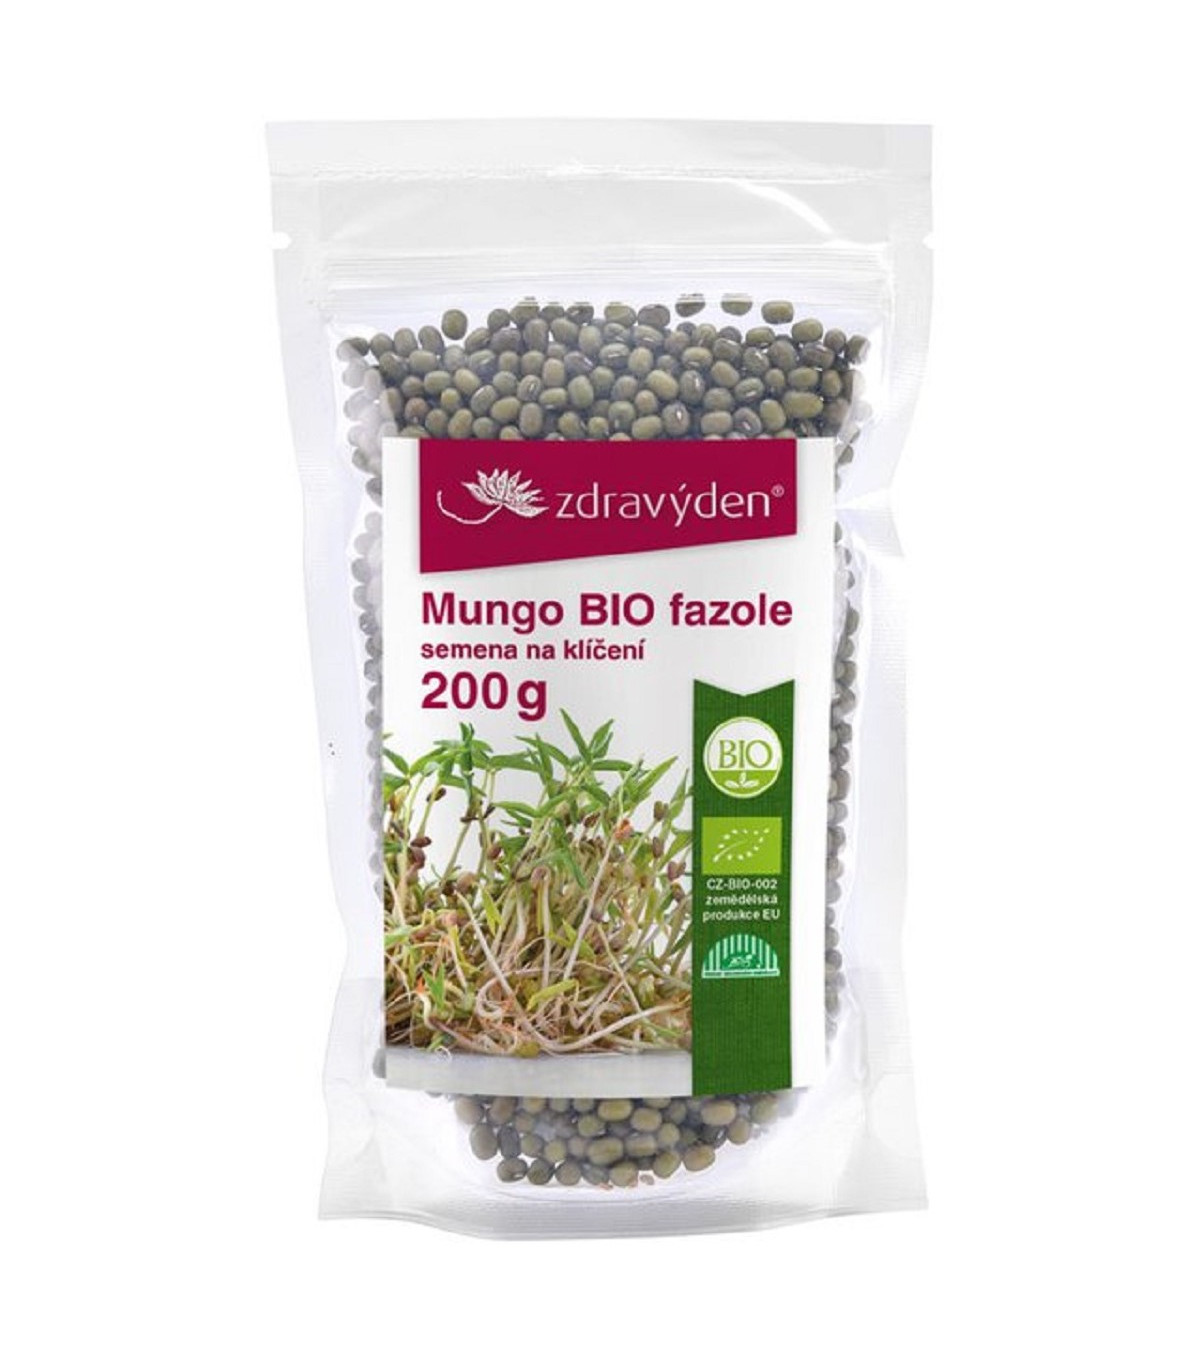 BIO fazuľa mungo - bio semená na klíčenie - 200 g